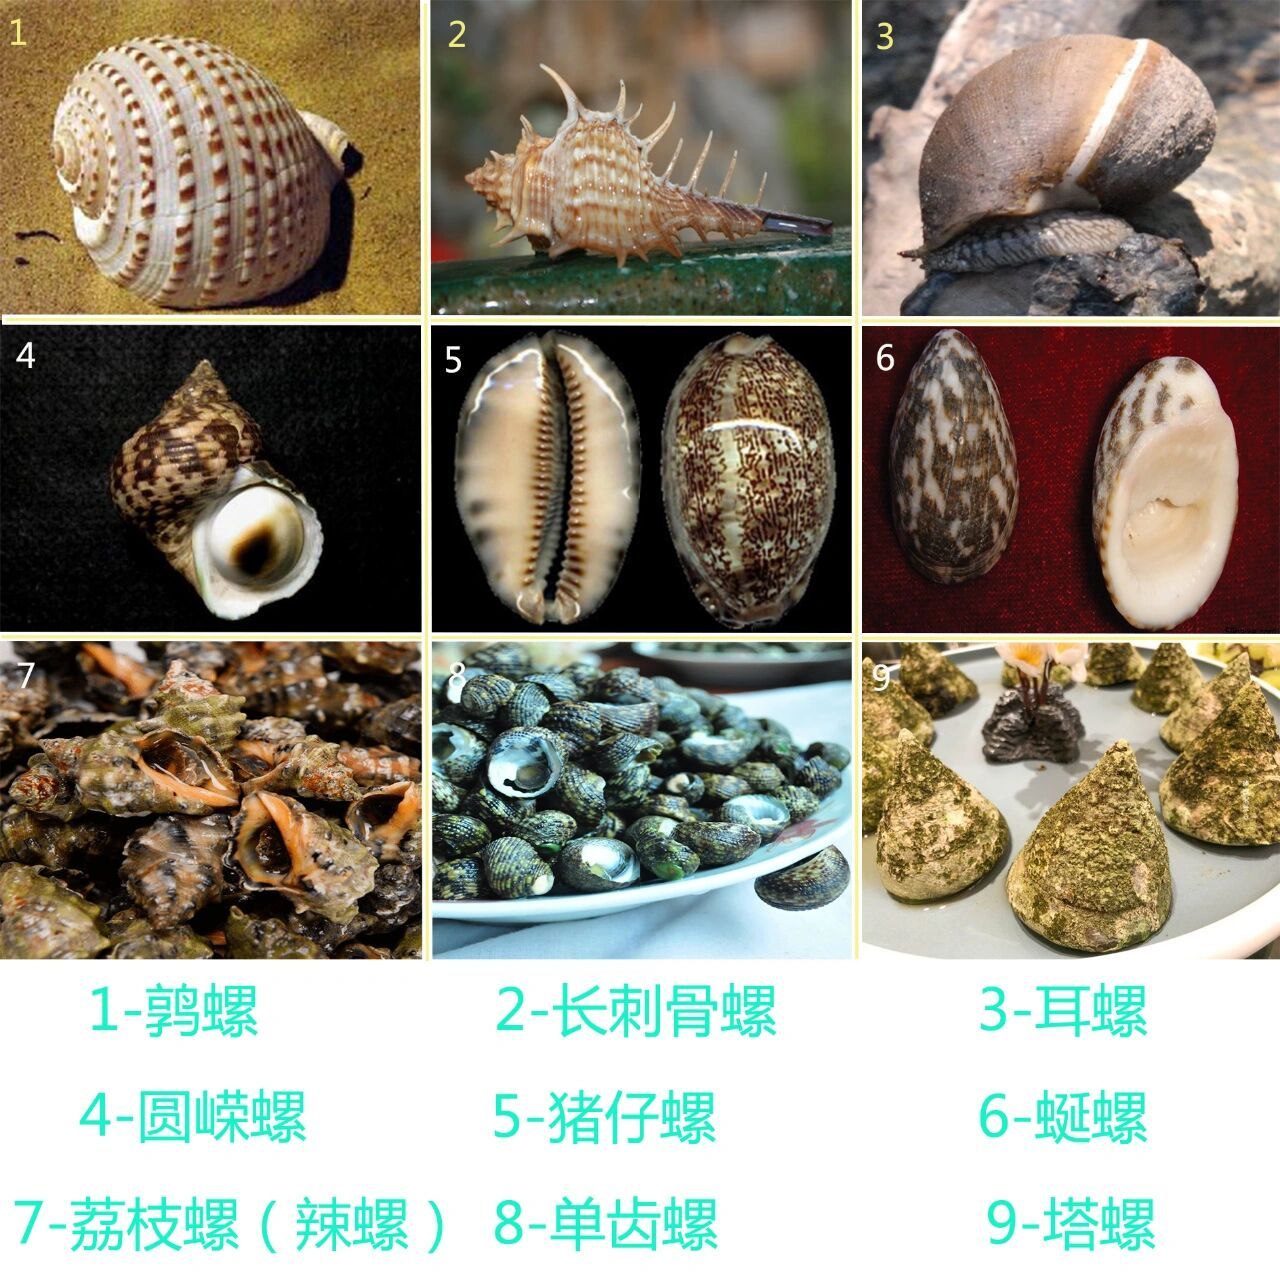 海螺类品种大全及介绍图片